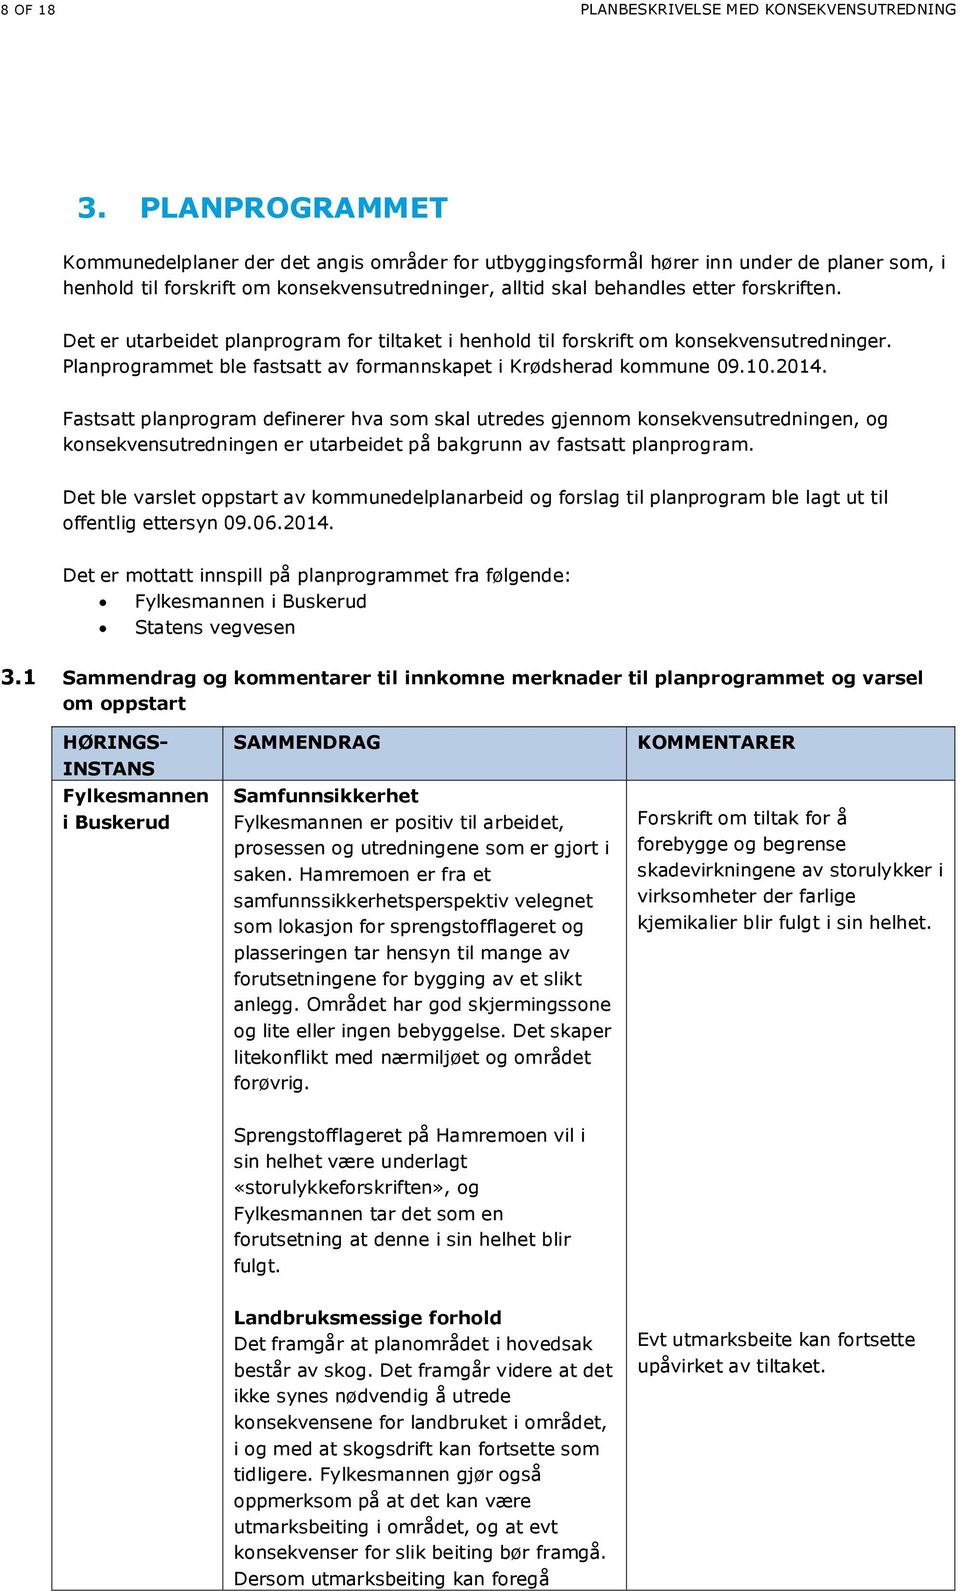 Det er utarbeidet planprogram for tiltaket i henhold til forskrift om konsekvensutredninger. Planprogrammet ble fastsatt av formannskapet i Krødsherad kommune 09.10.2014.